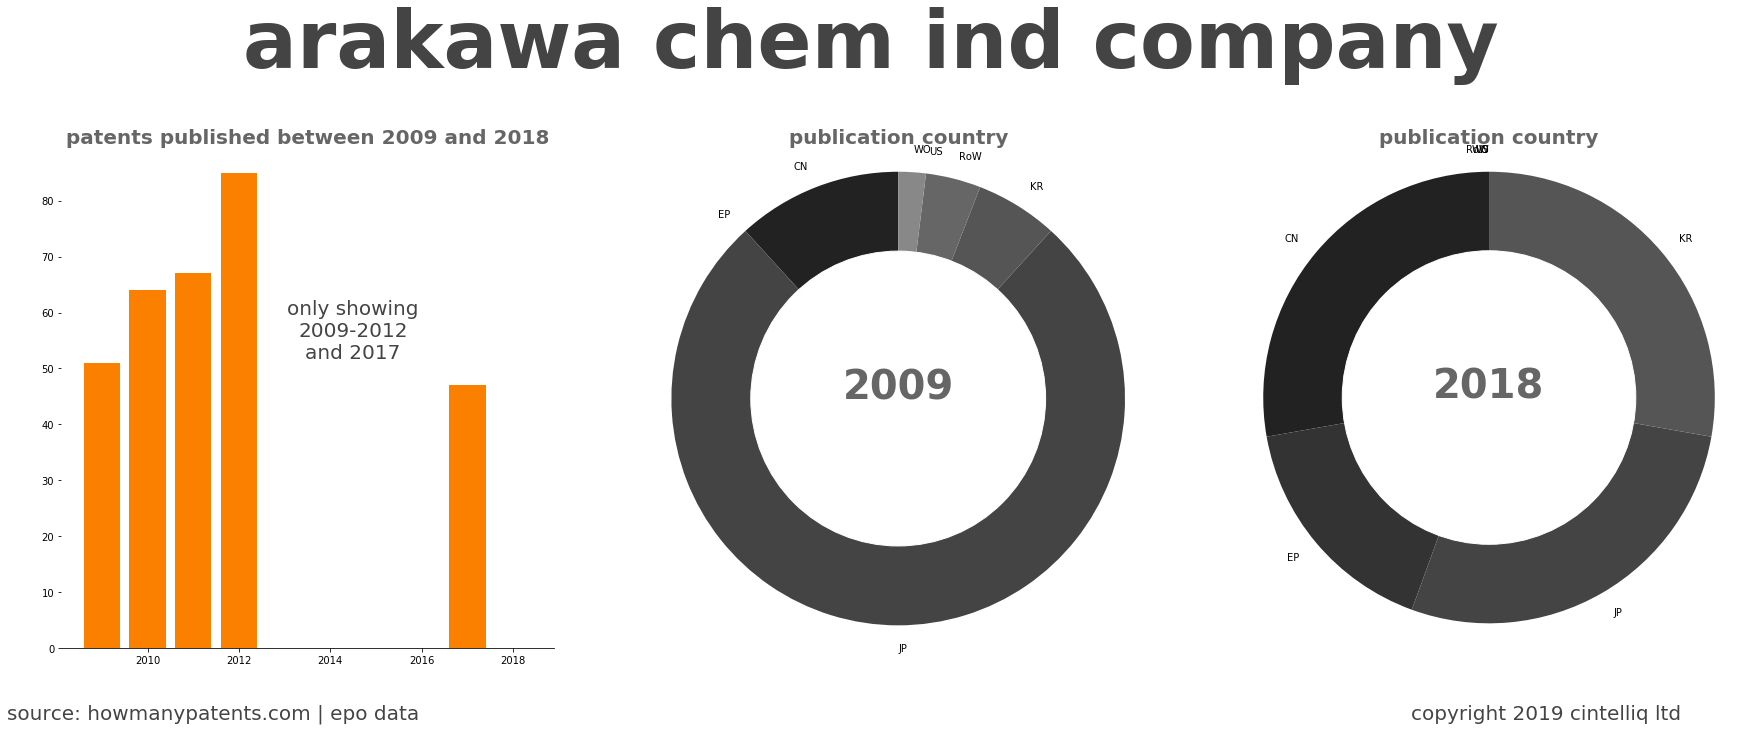 summary of patents for Arakawa Chem Ind Company